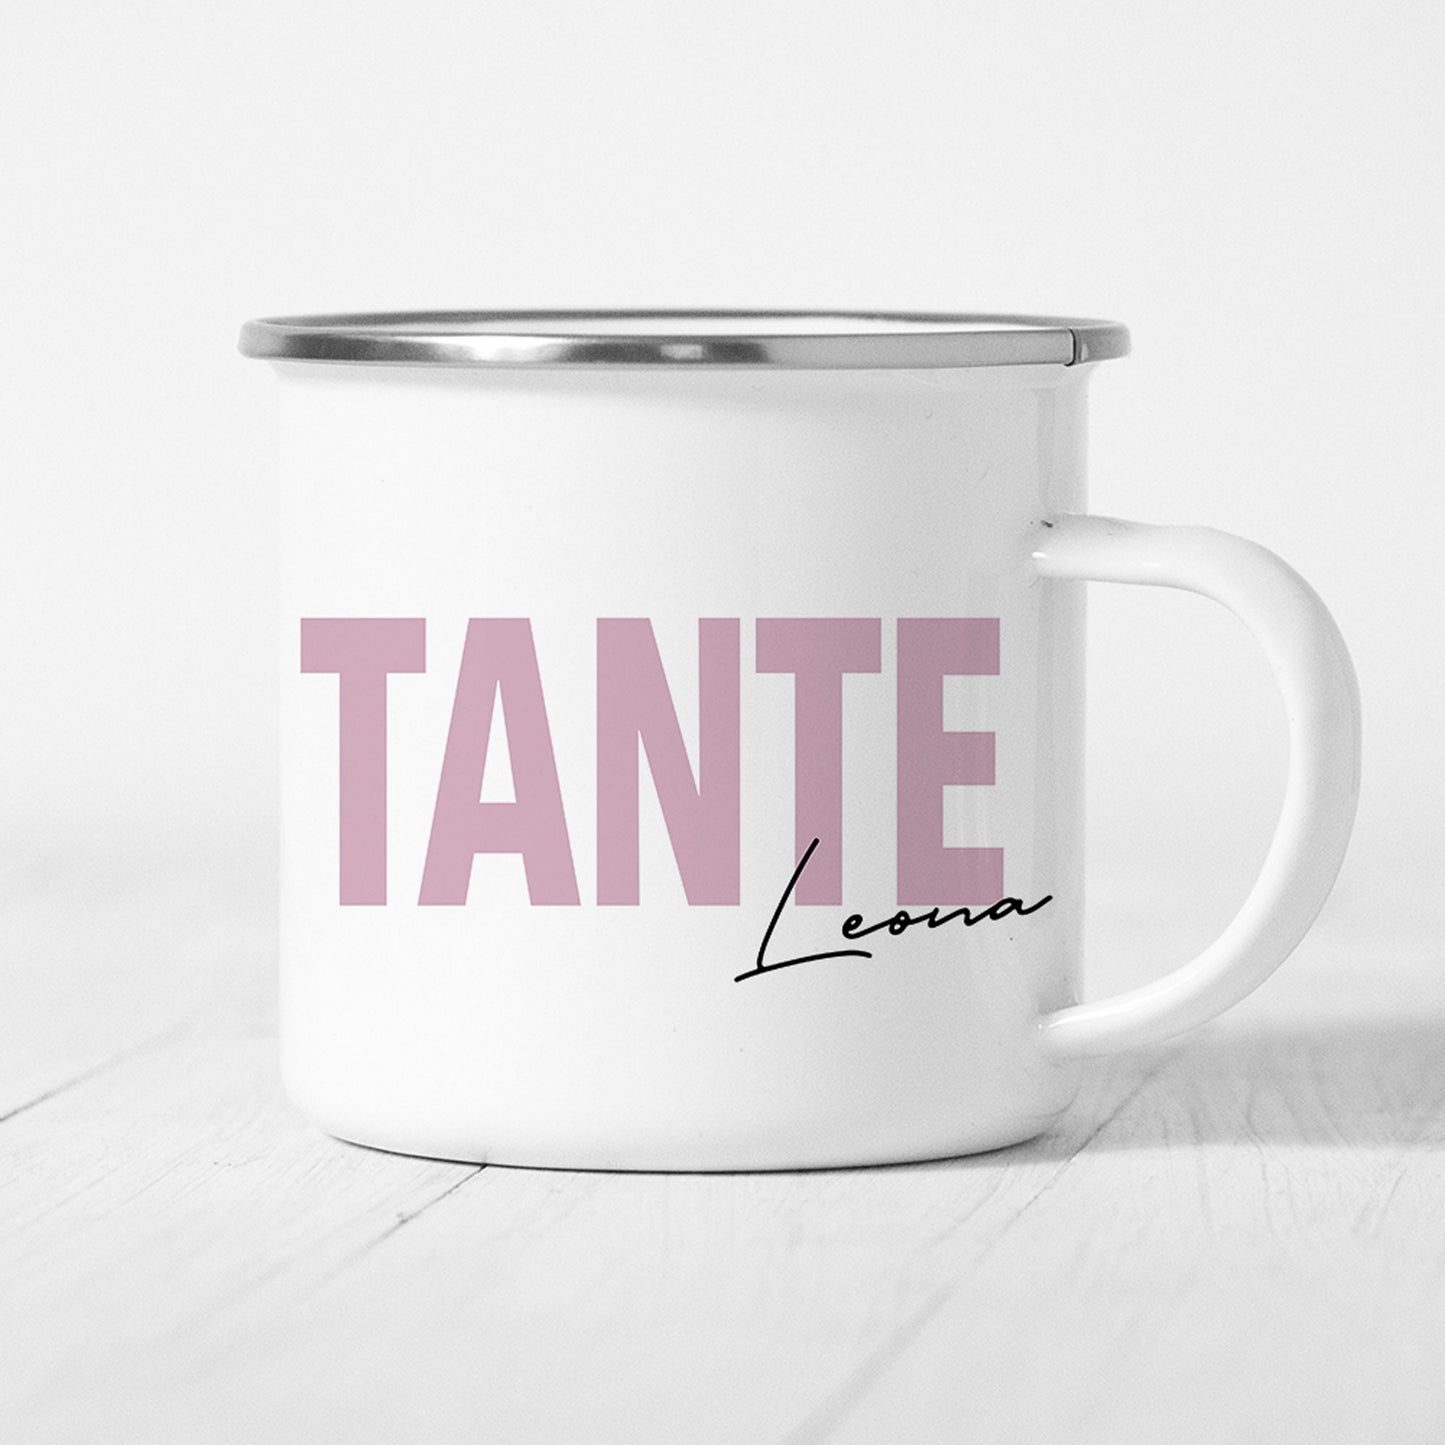 Tante Emaille Tasse Keramik Personalisiert mit Namen Verschiedene Farben Tante Geschenk Personalisiert Geburtstagsgeschenk